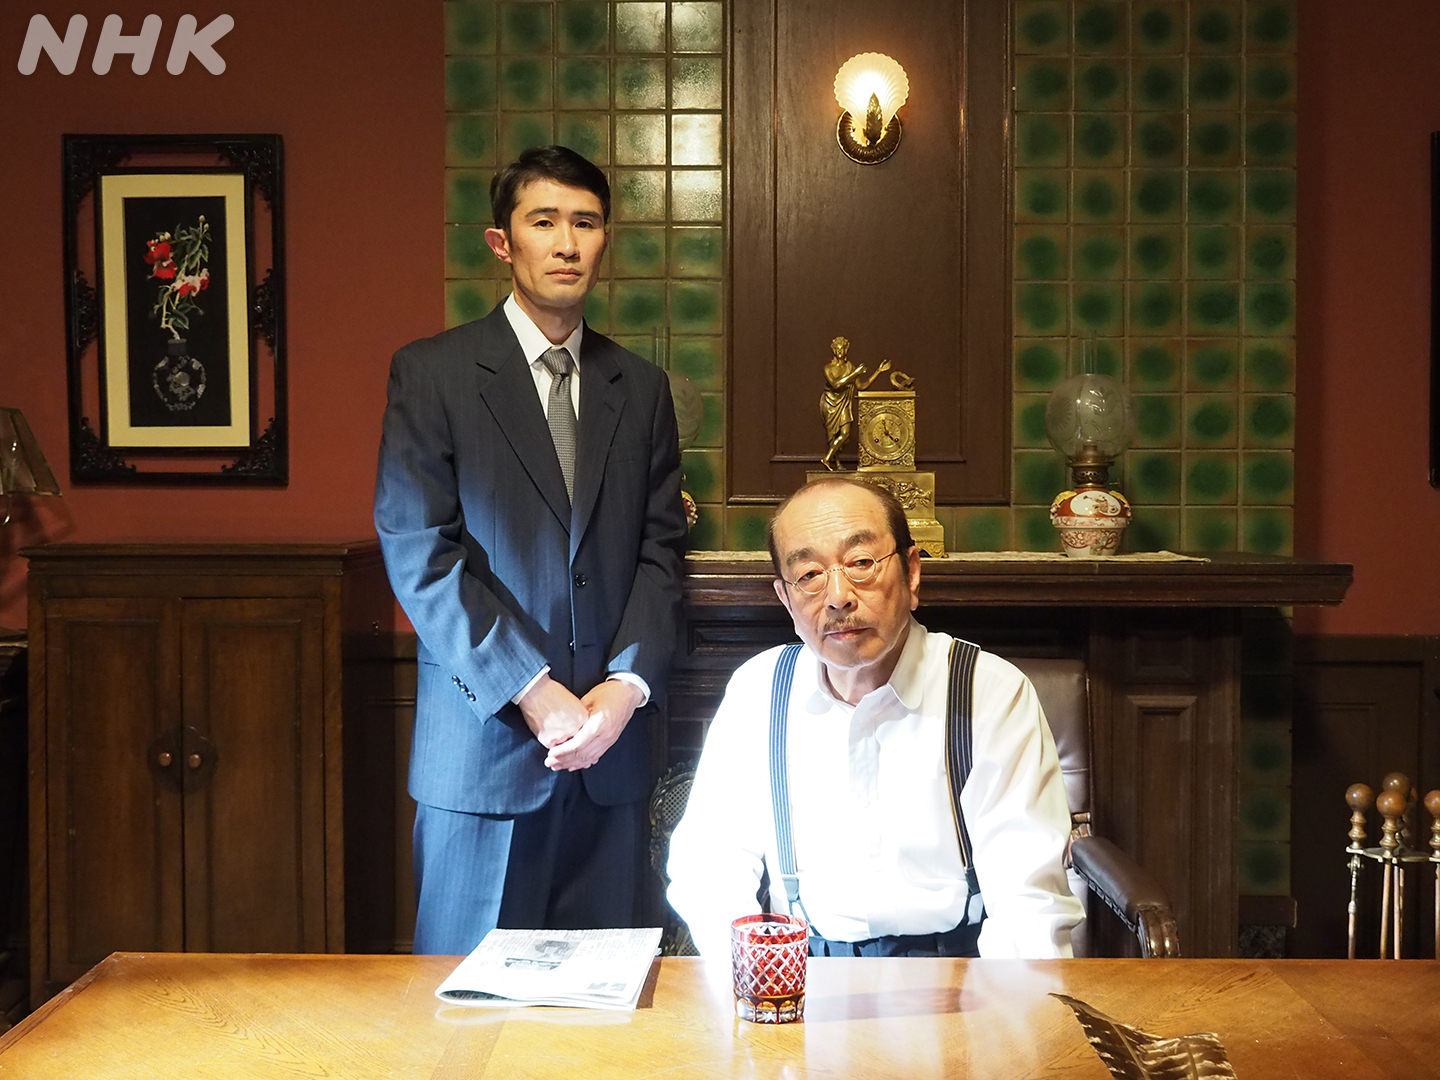 NHK朝ドラ「エール」志村けんさん出演回放送　名演に「長さんが乗り移ったみたいだった」「もういないなんて」などの声 | ねとらぼ調査隊